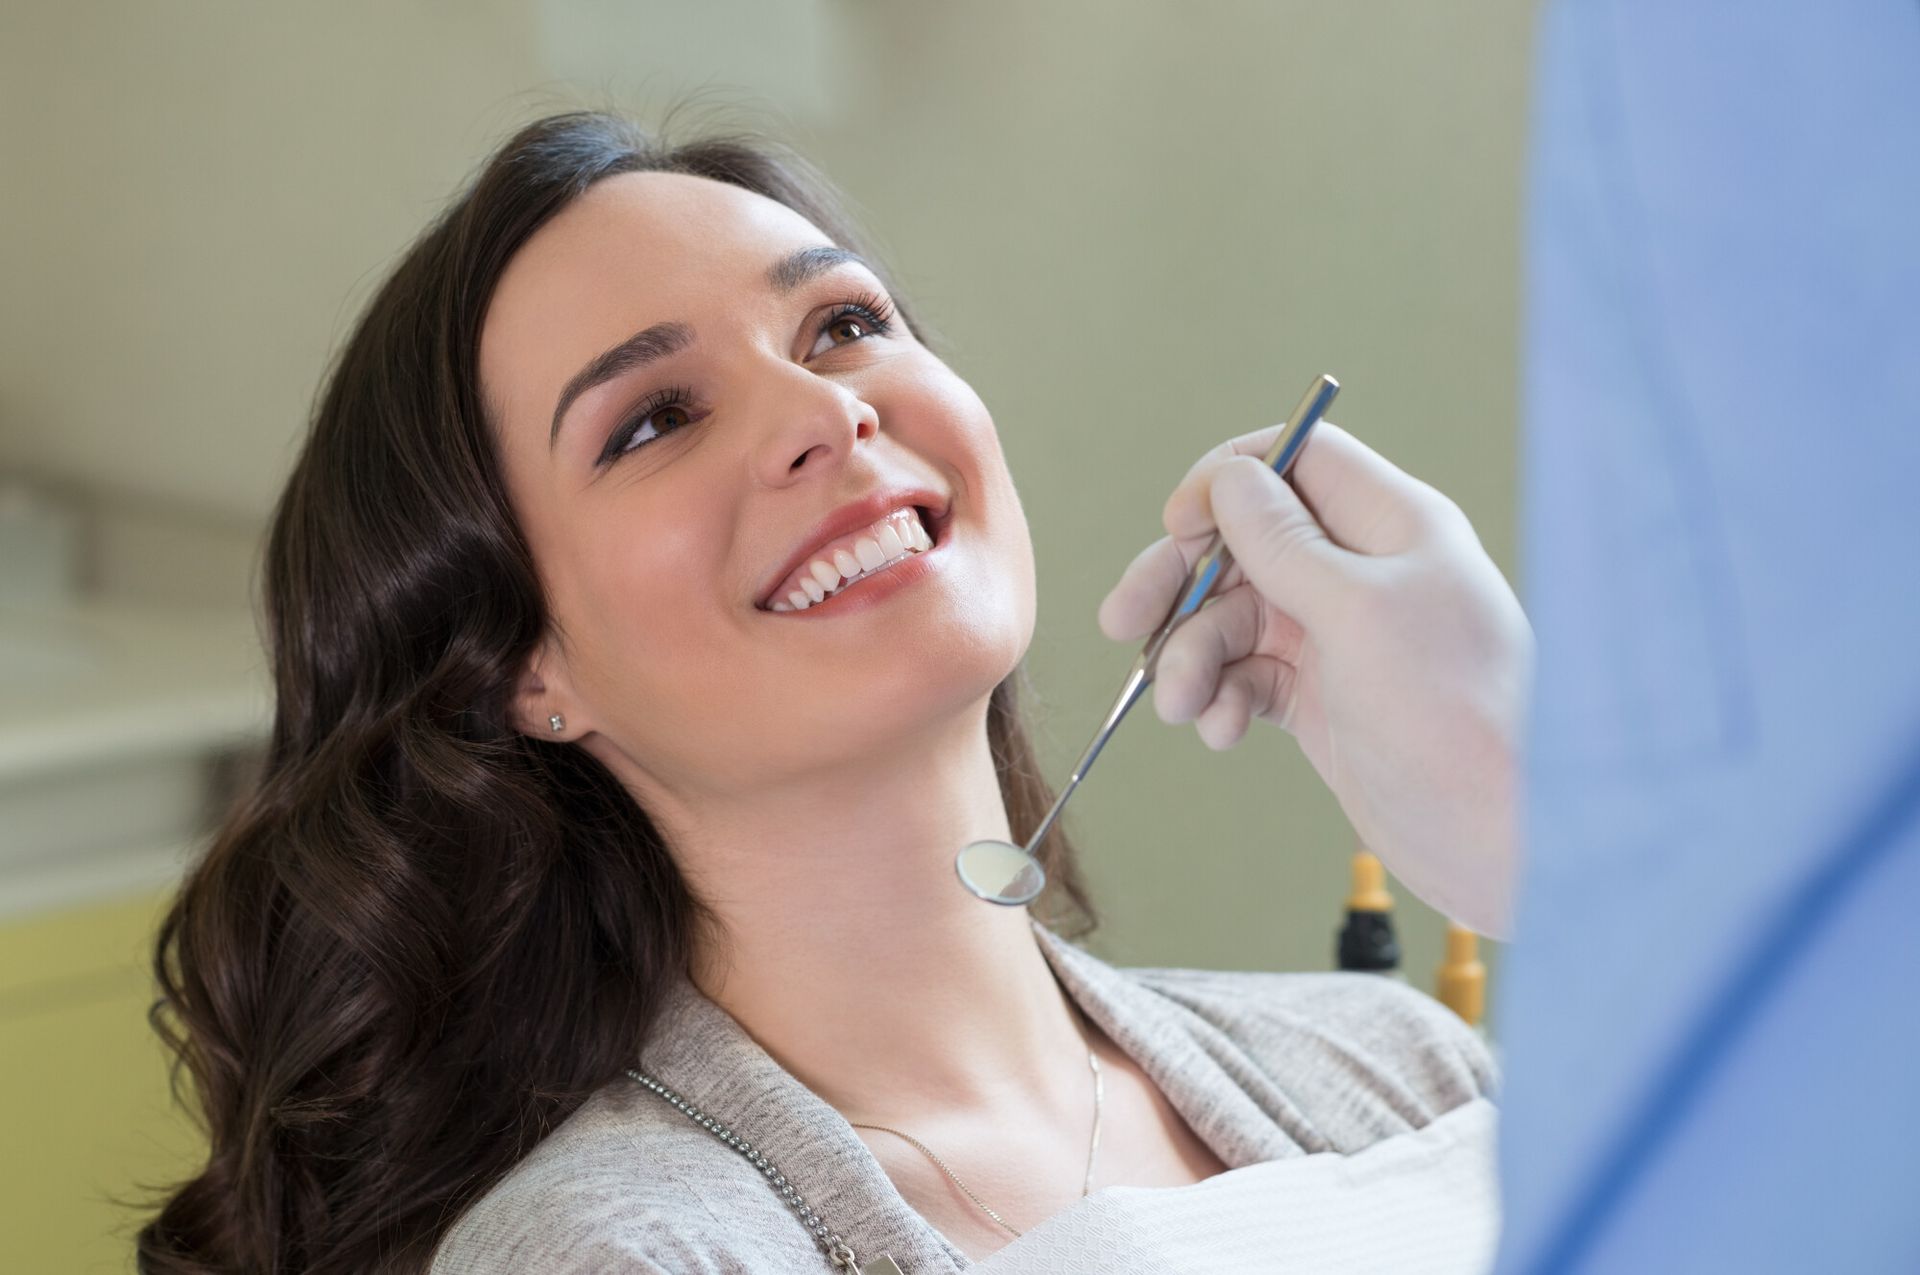 Woman smiling at dental check up